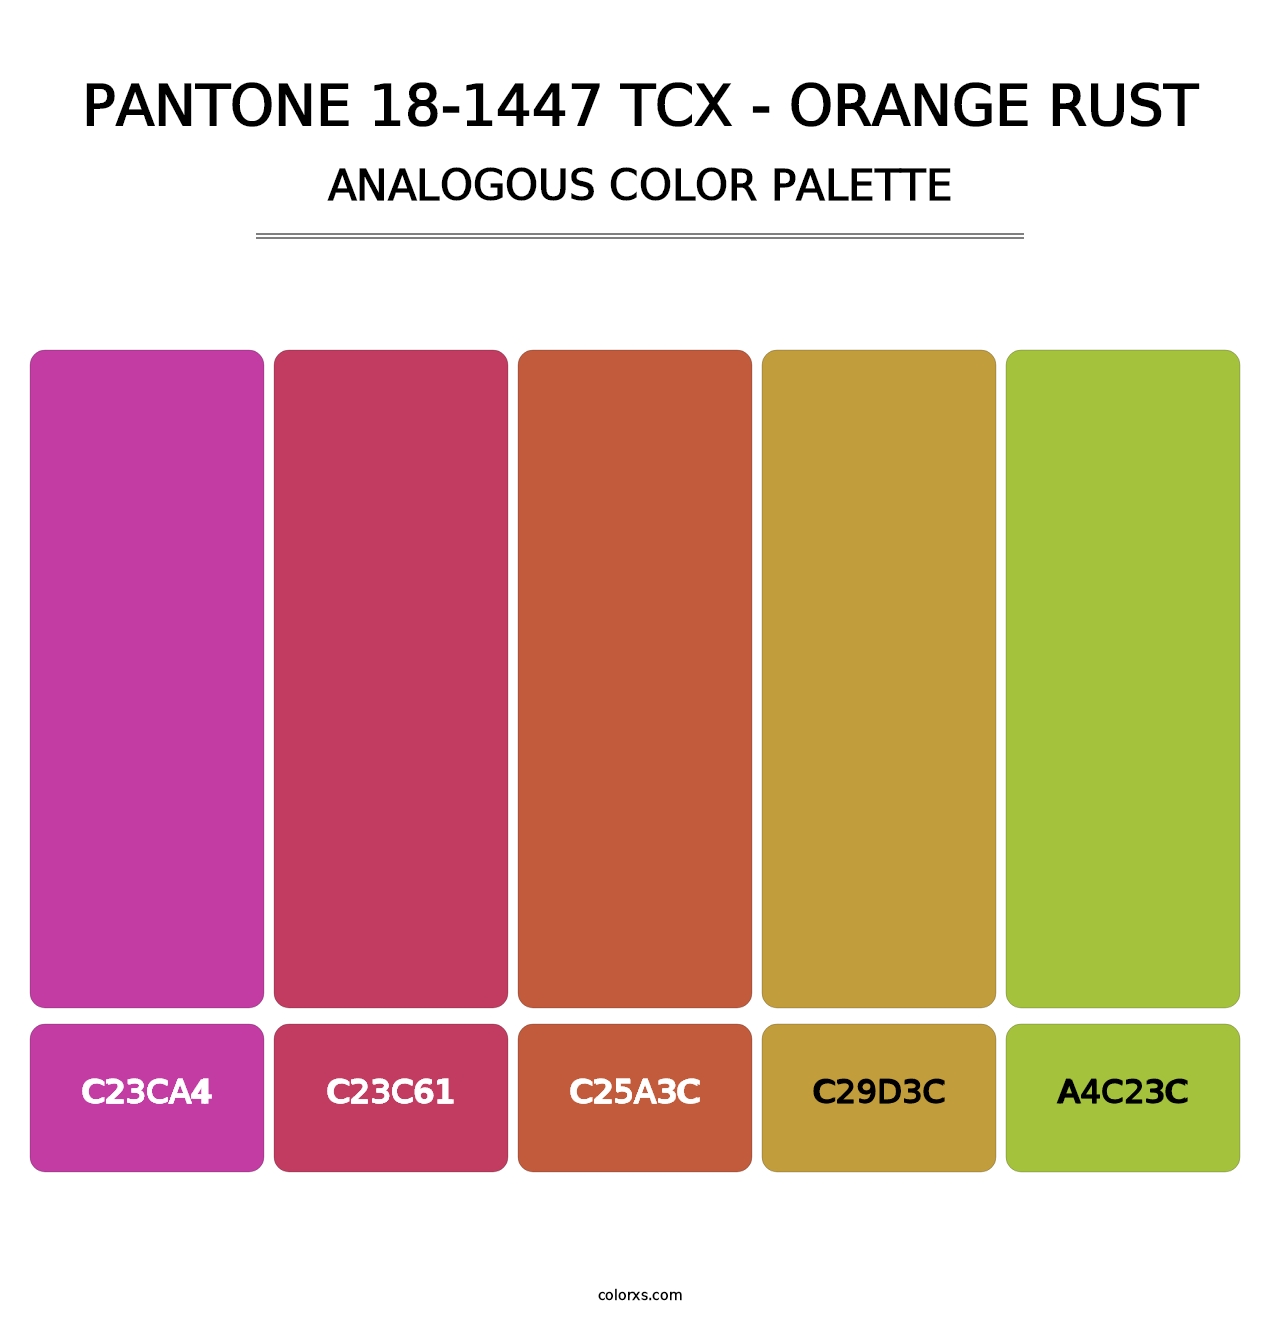 PANTONE 18-1447 TCX - Orange Rust - Analogous Color Palette